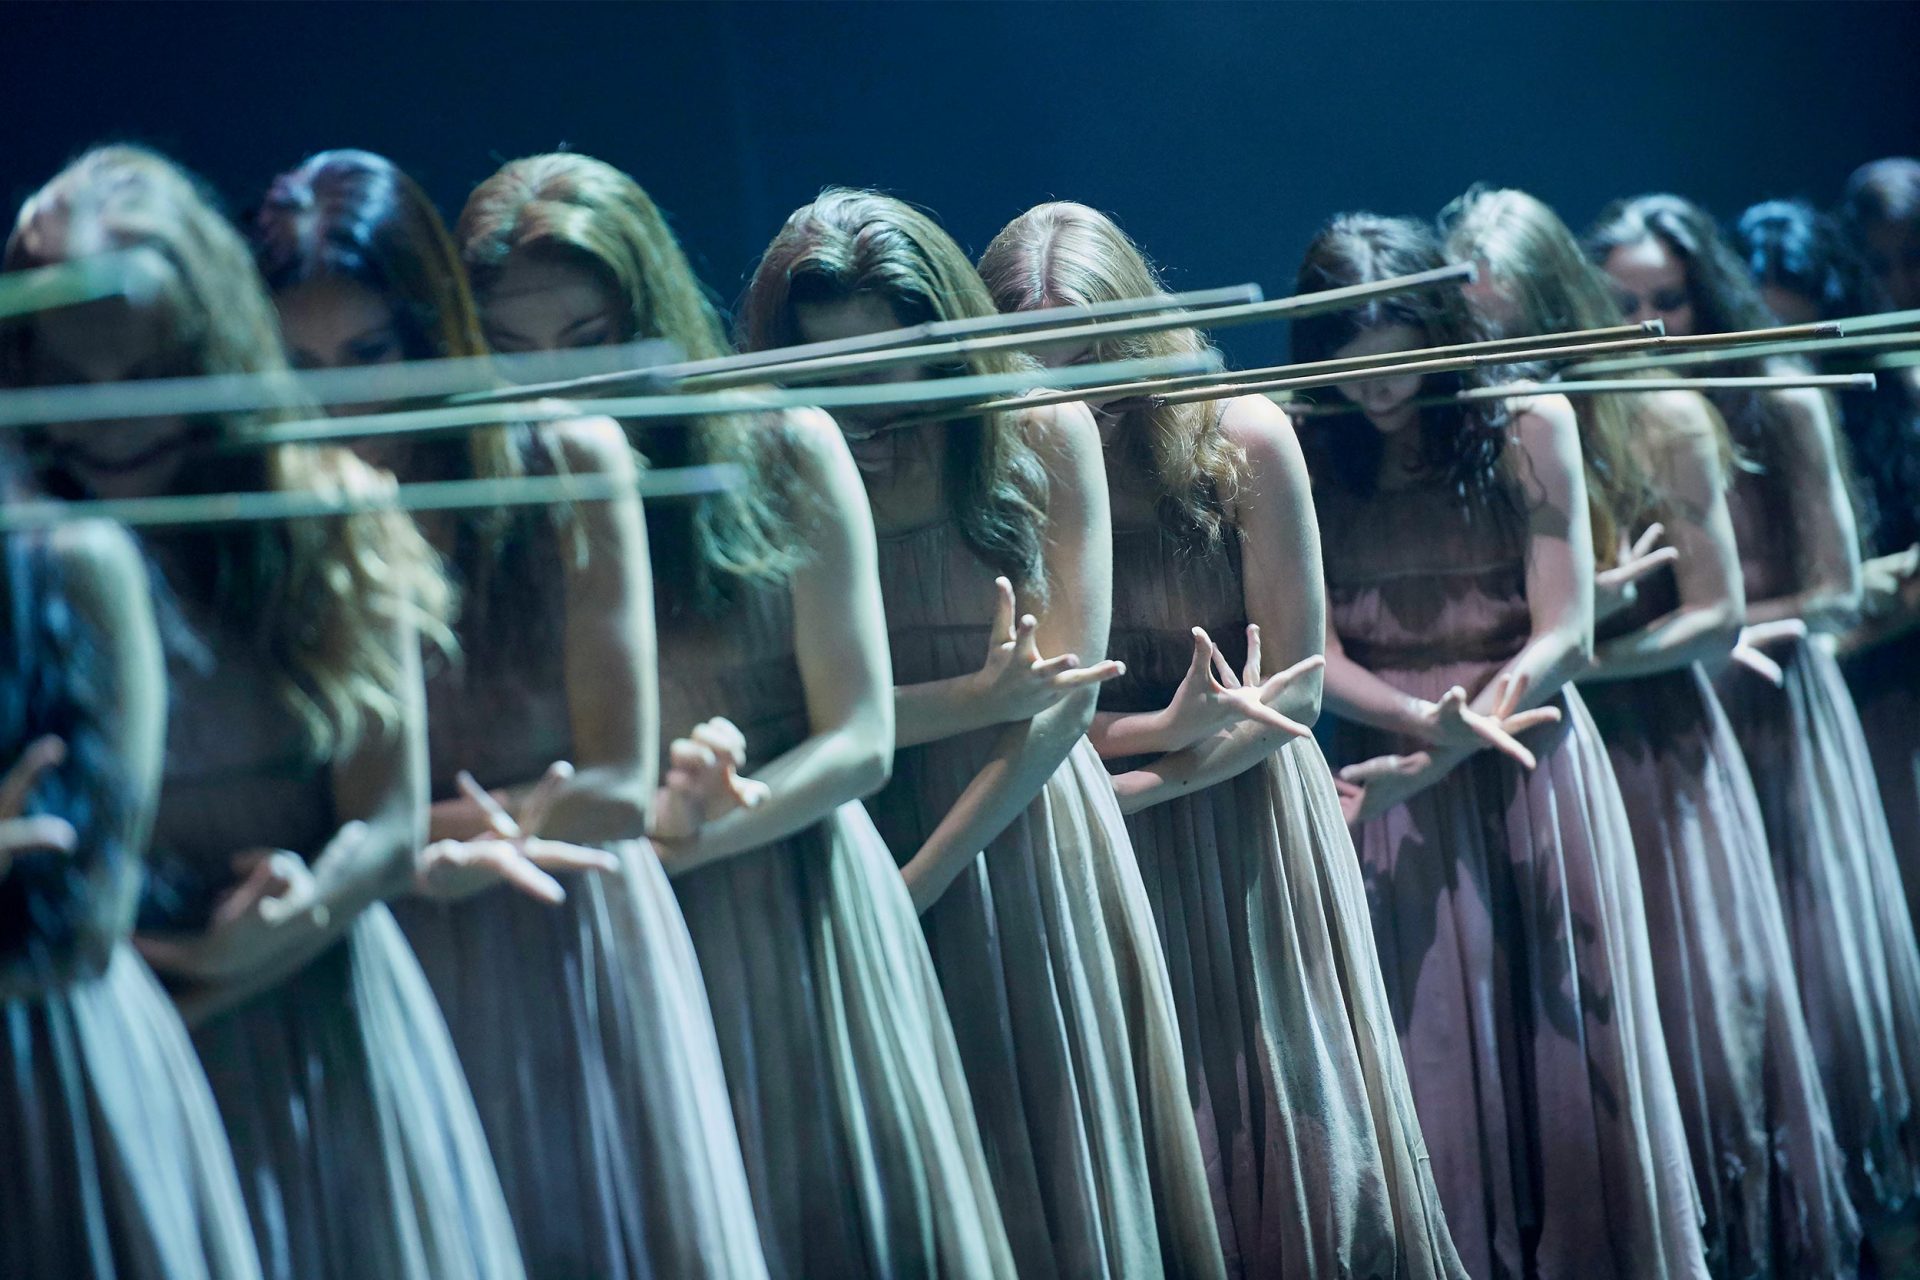 English National Ballet in Akram Khan's Giselle © Laurent Liotardo